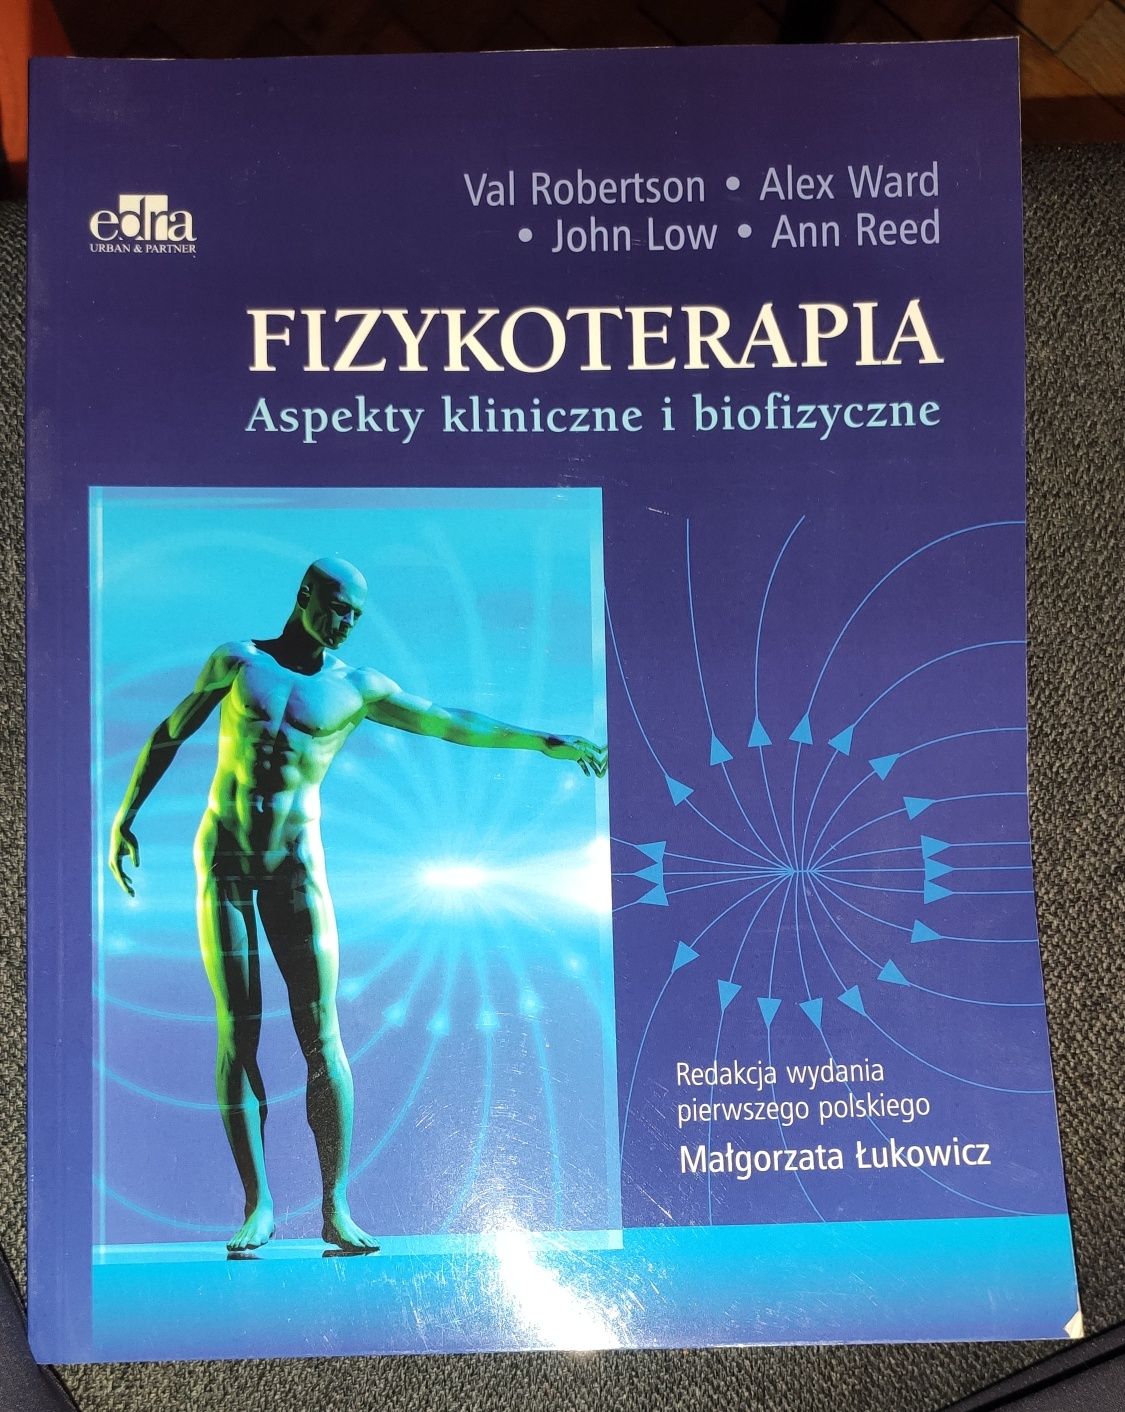 Fizykoterapia aspekty kliniczne i biofizyczne Val Robertson 2006